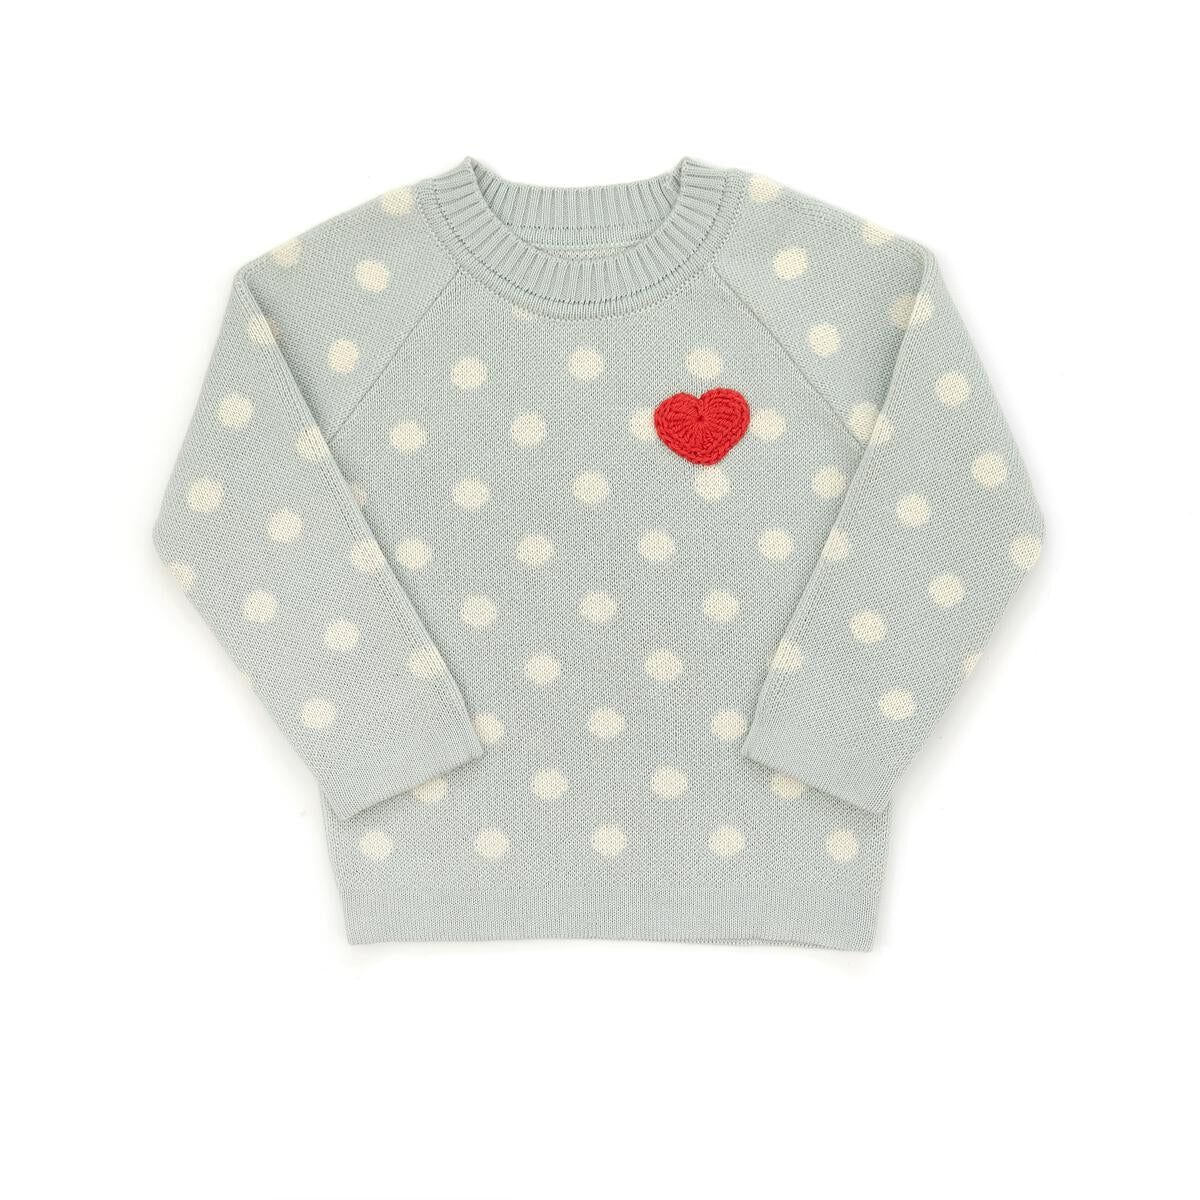 heart sweater in light blue